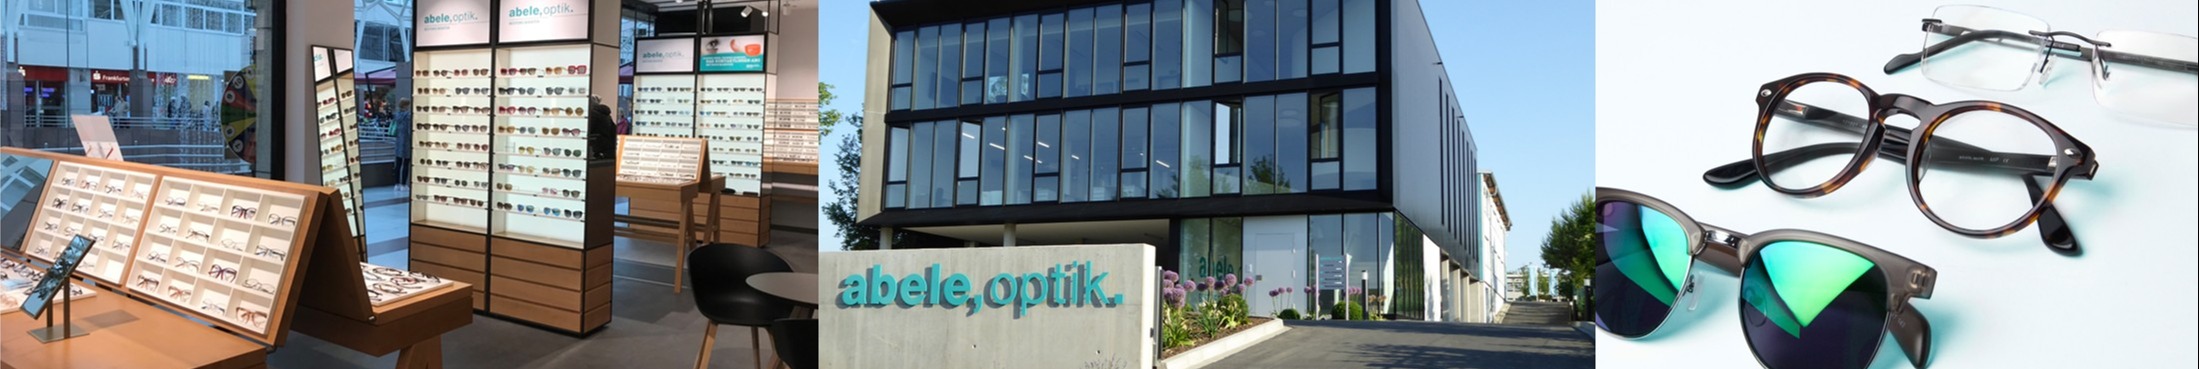 Abele-Optik GmbH background